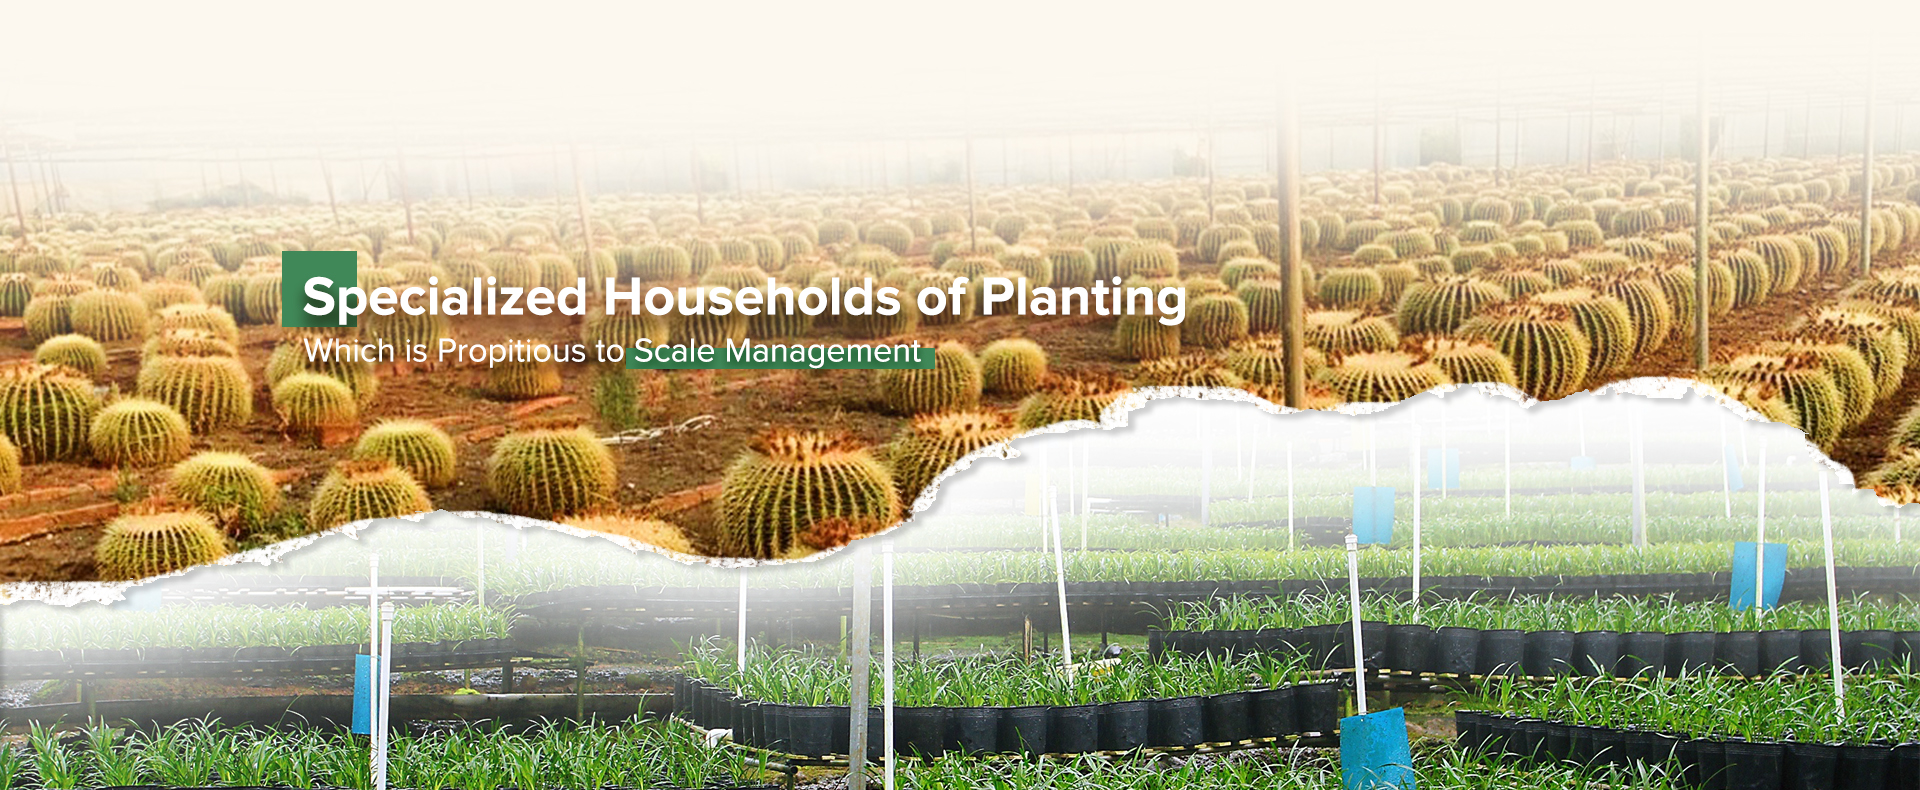 Wyspecjalizowane gospodarstwa do sadzenia roślin sprzyjają zarządzaniu sprzedażą